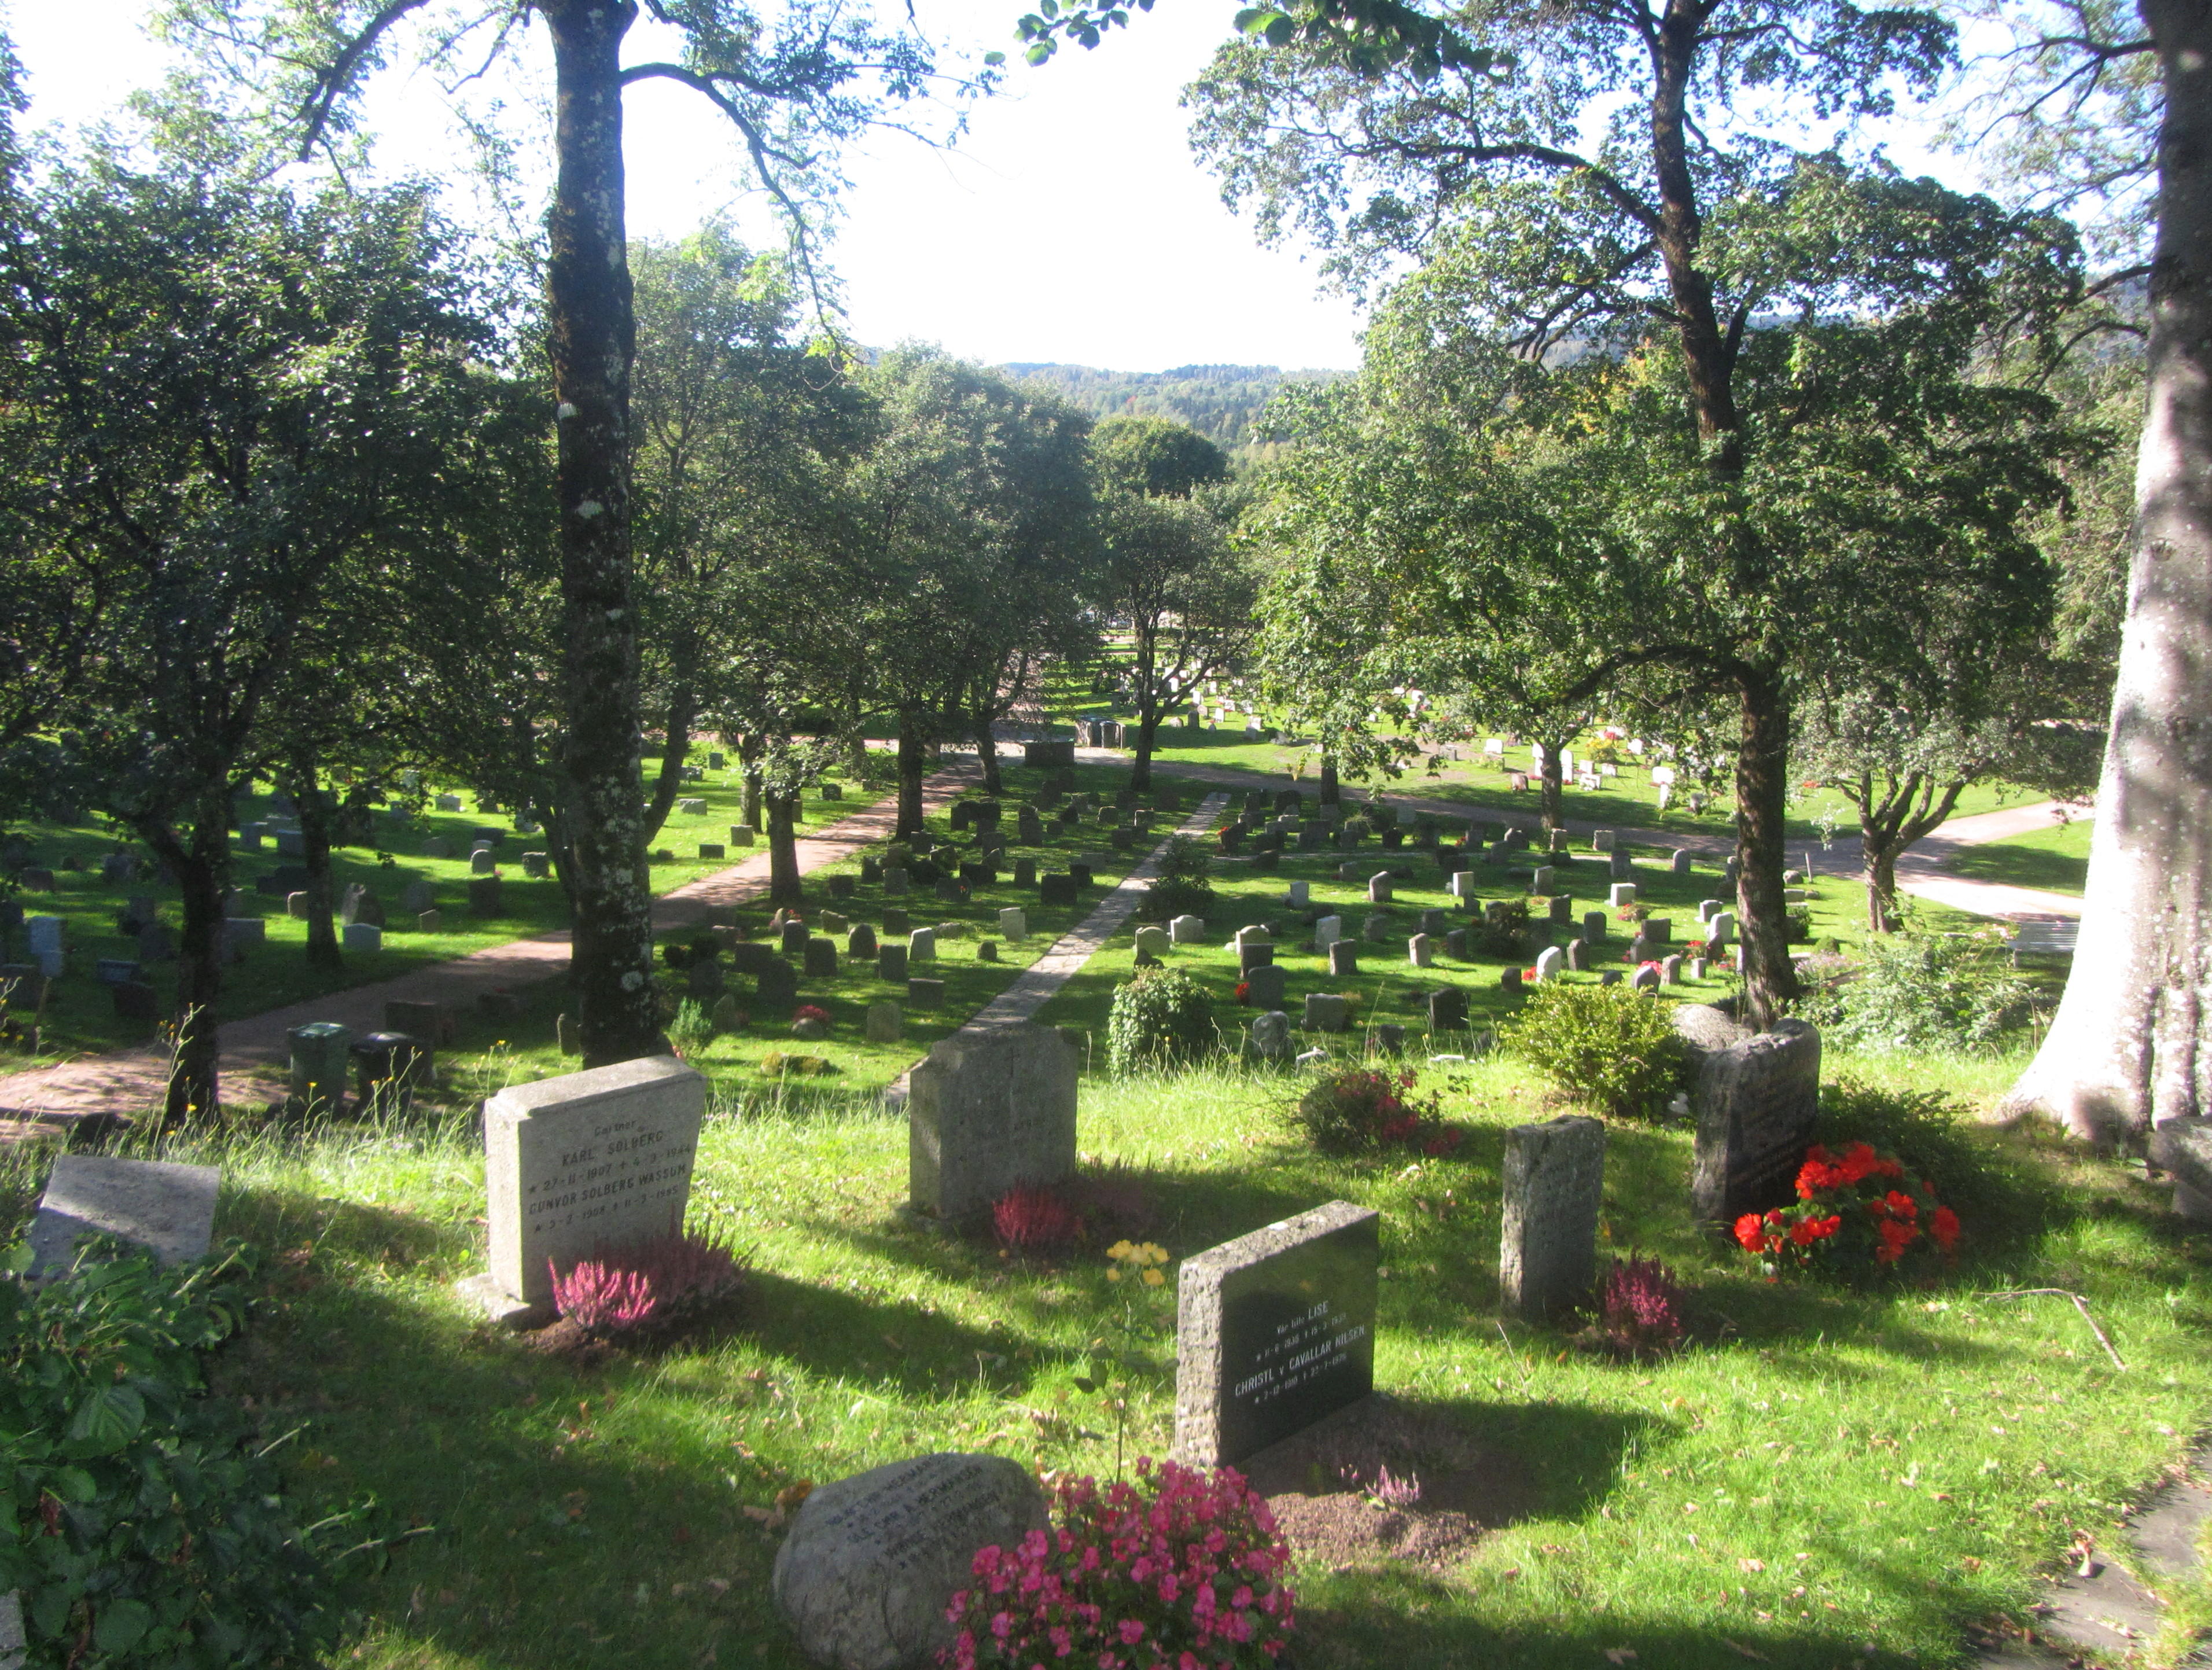 Asker kirkegård i Akershus ligger delvis i naturlig og kupert terreng.